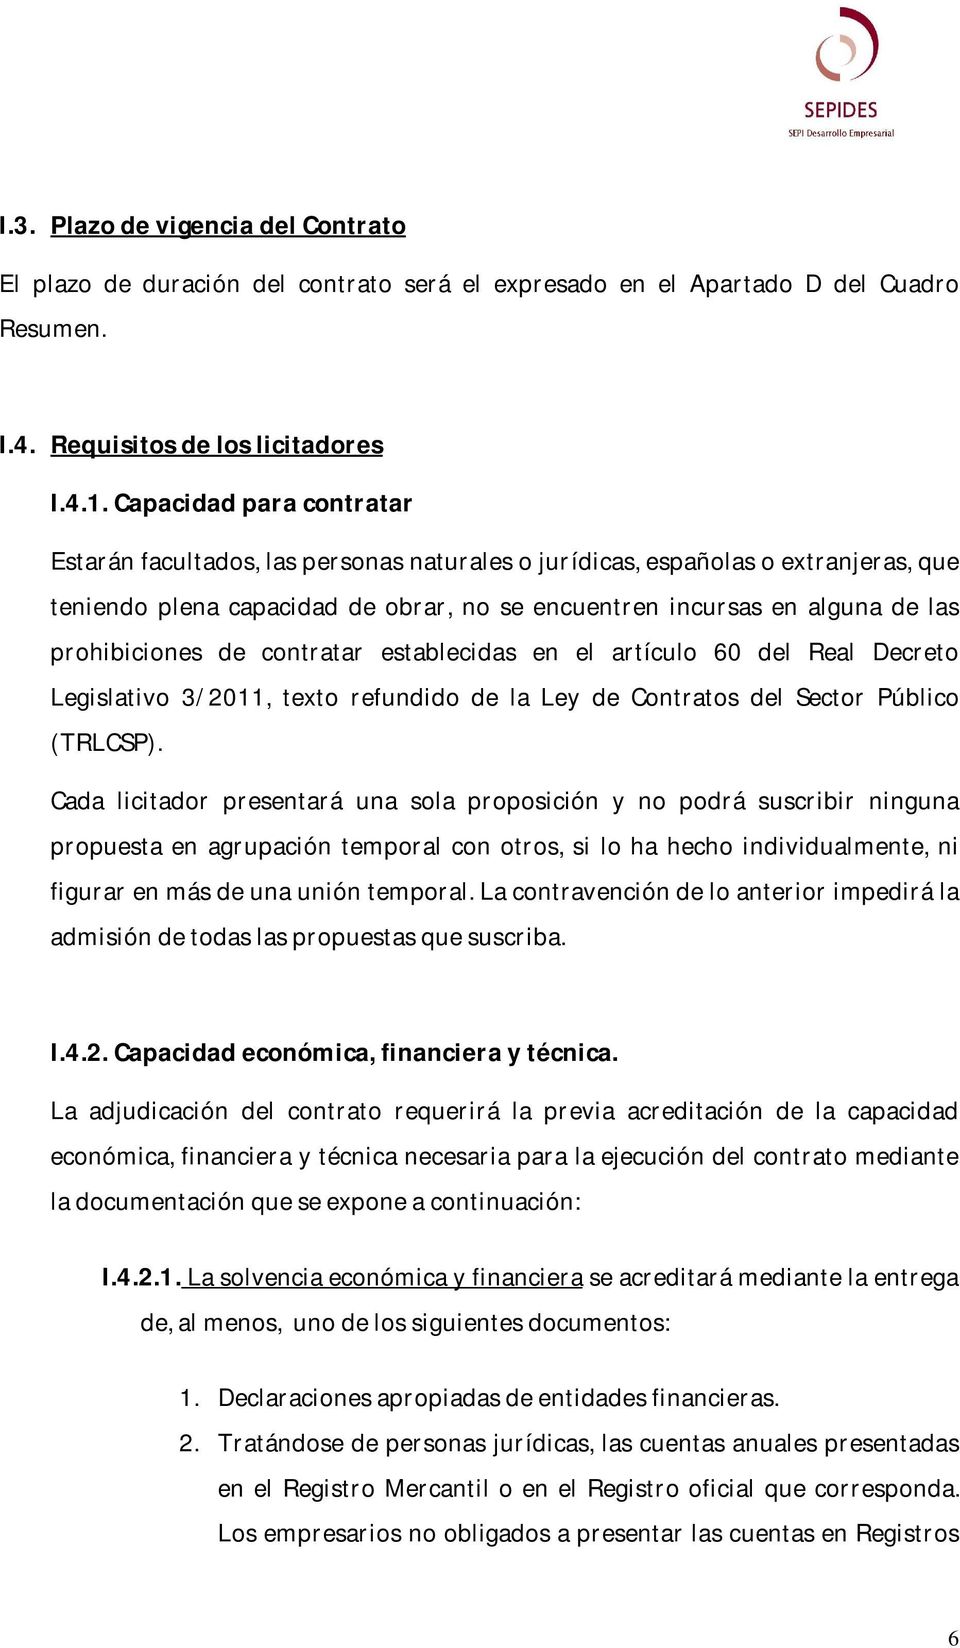 prohibiciones de contratar establecidas en el artículo 60 del Real Decreto Legislativo 3/2011, texto refundido de la Ley de Contratos del Sector Público (TRLCSP).